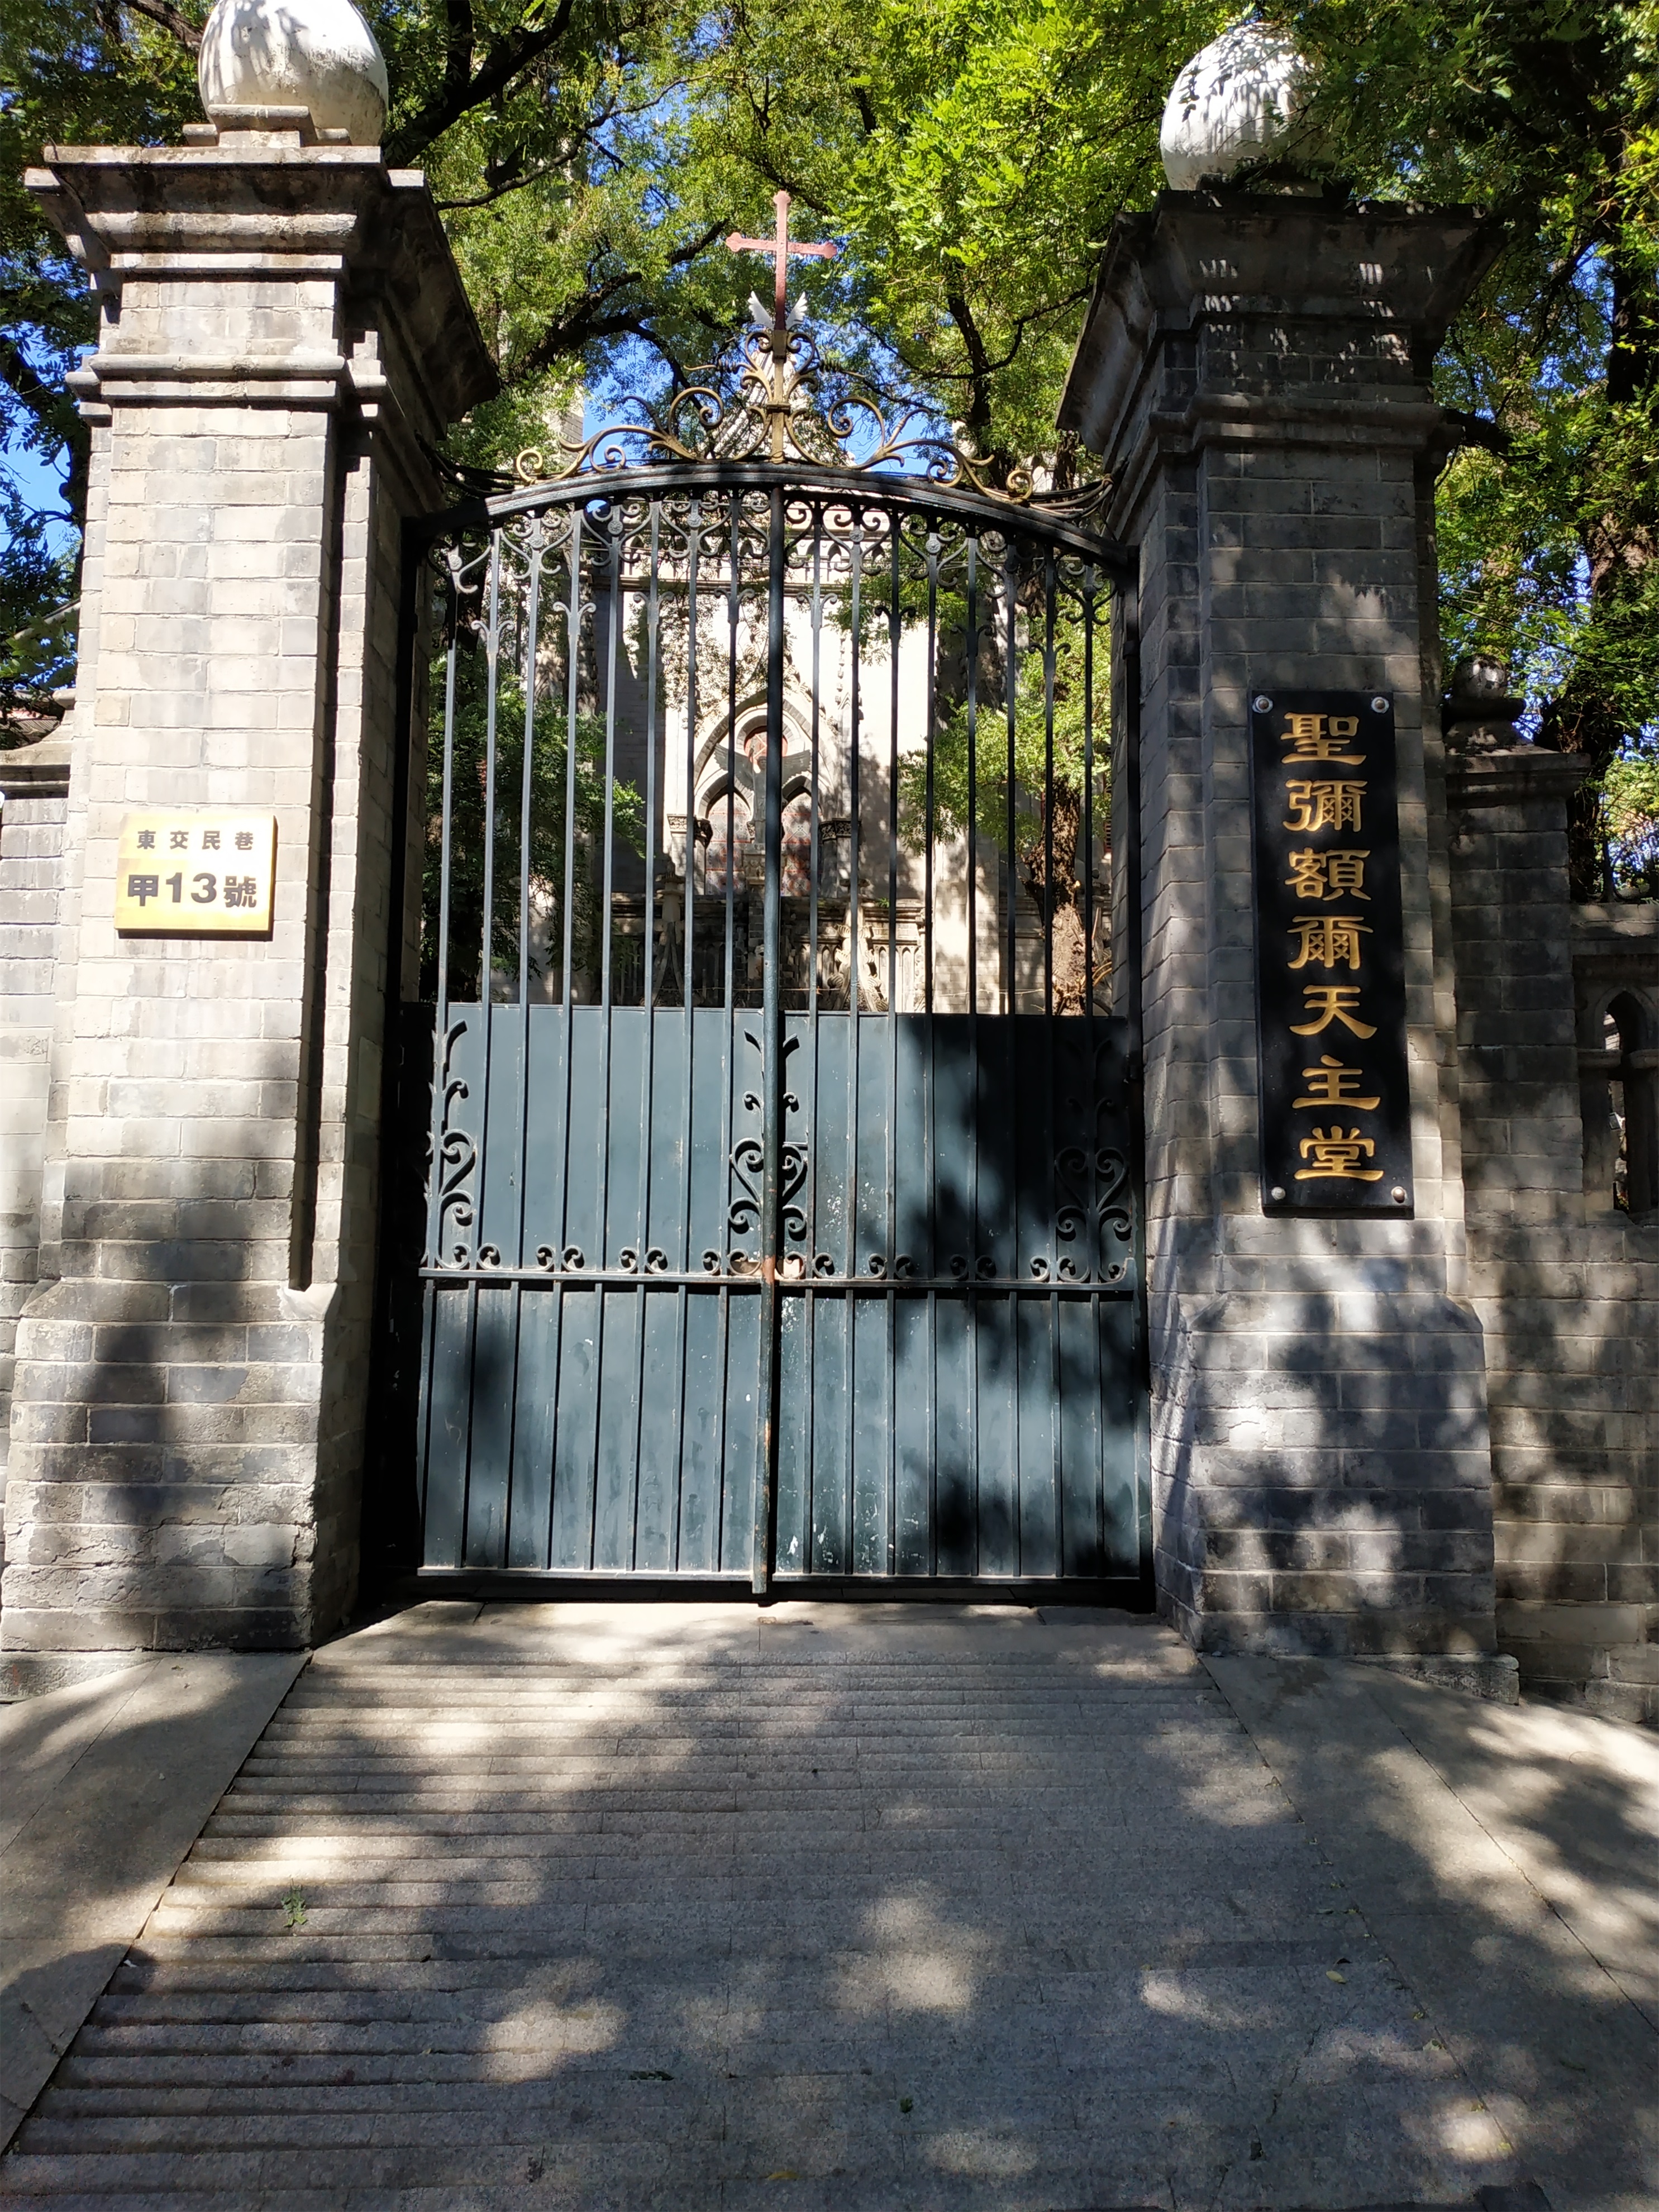 路上偶遇的街景 东交民巷,在旧中国时为使馆区,是北京市东城区的一条